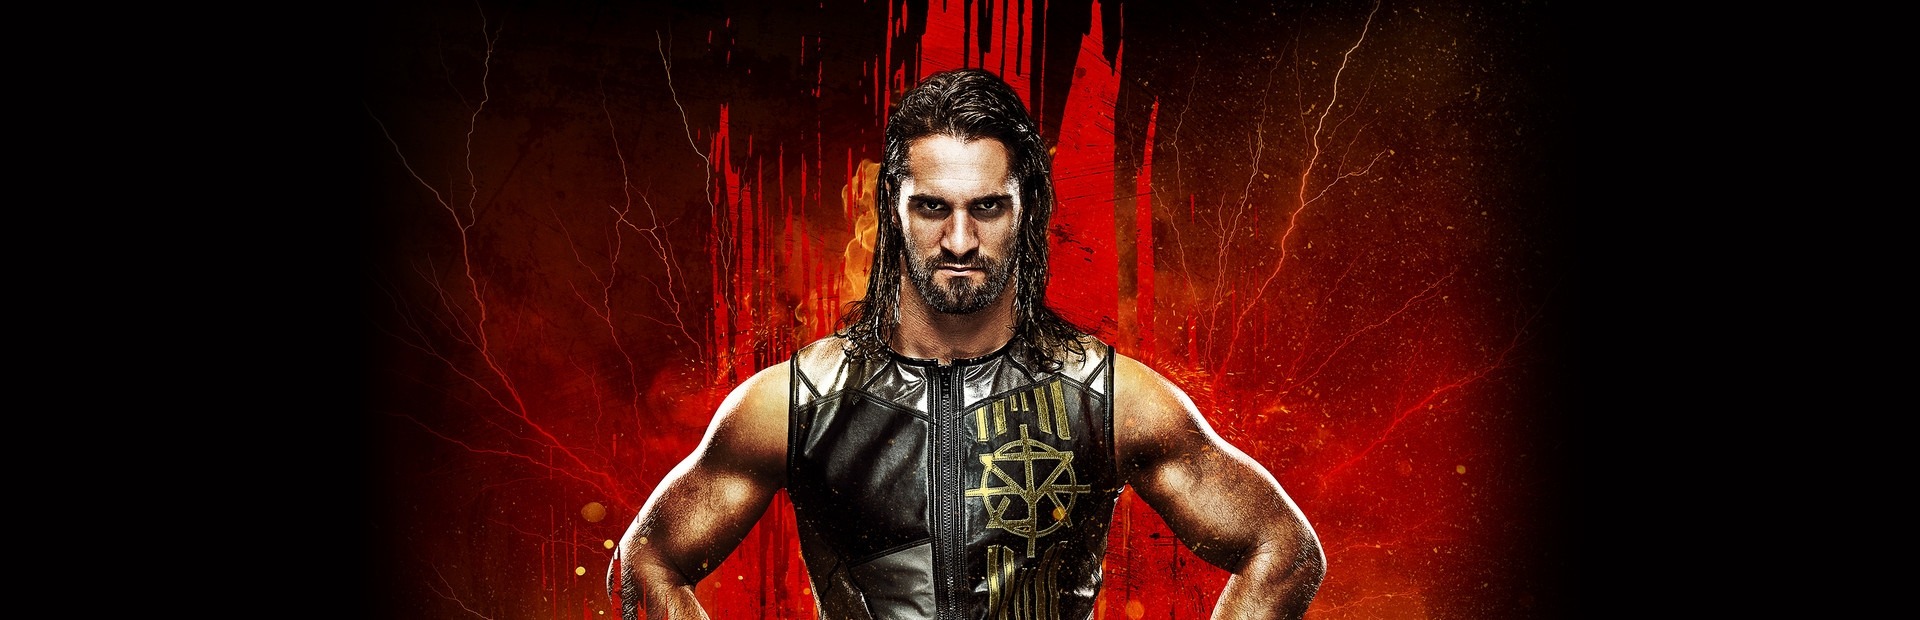 Banner WWE 2K18 - Cena (Nuff) Pack